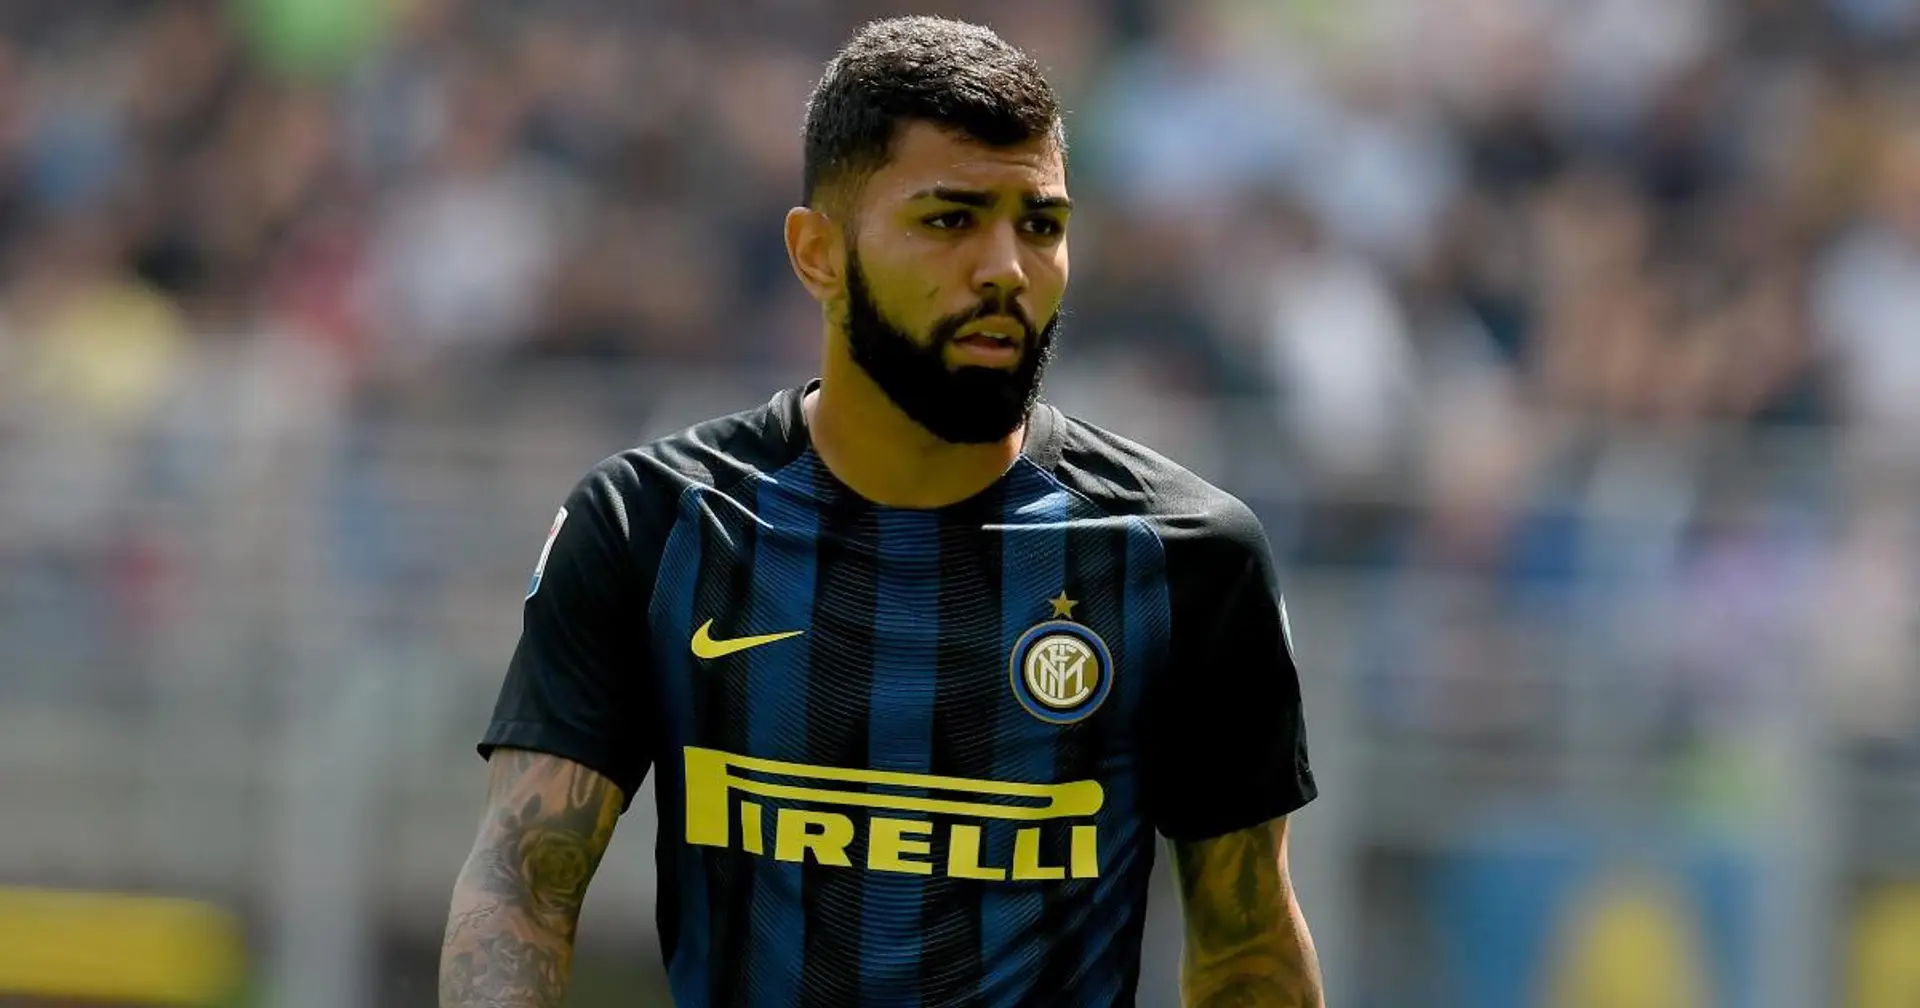 "L'Inter una spina nel fianco per me", Gabigol attacca i nerazzurri e svela alcuni retroscena sull'avventura a Milano